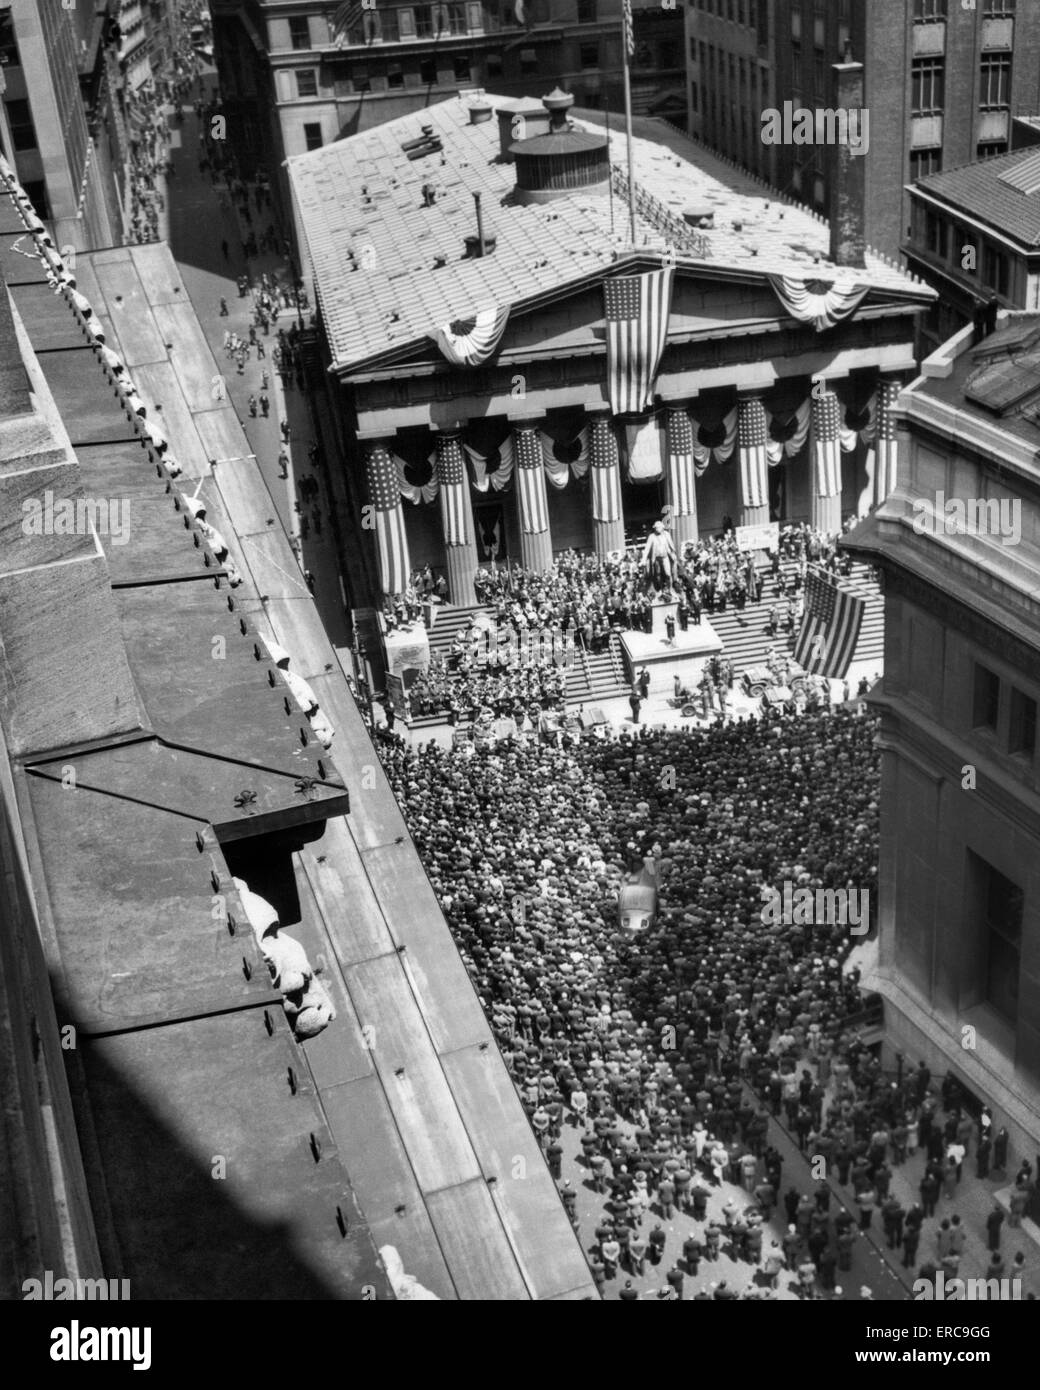 1940ER JAHREN DES ZWEITEN WELTKRIEGS KRIEG BOND RALLYE FEDERAL TREASURY BUILDING IN DER NÄHE VON NEW YORK BÖRSE WALL STREET MANHATTAN NEW YORK CITY USA Stockfoto